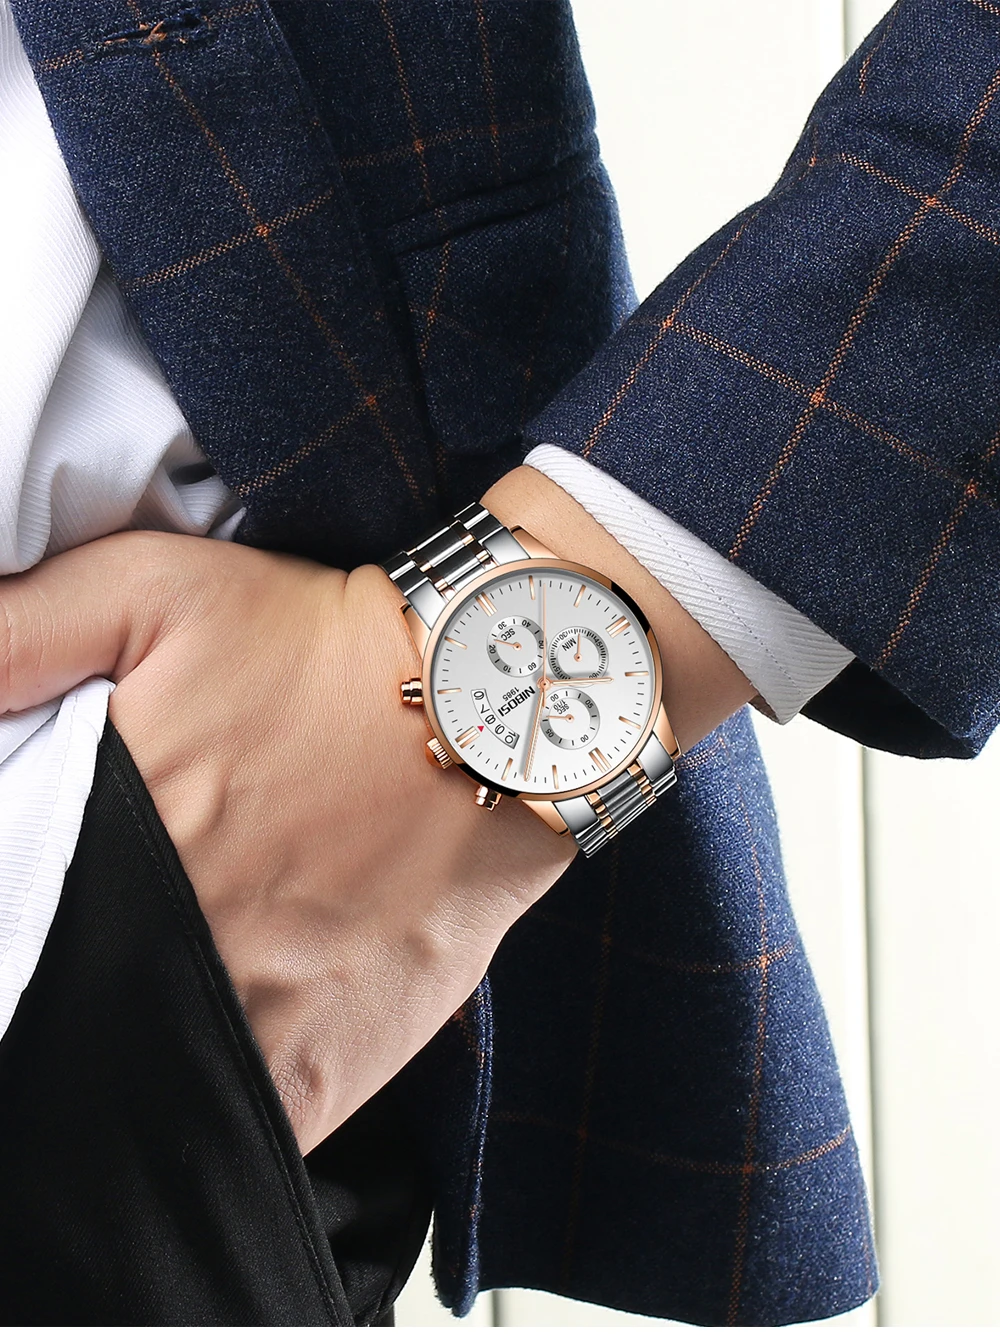  2021 горячая распродажа мужские часы NIBOSI оригинальный логотип хронограф модные простые